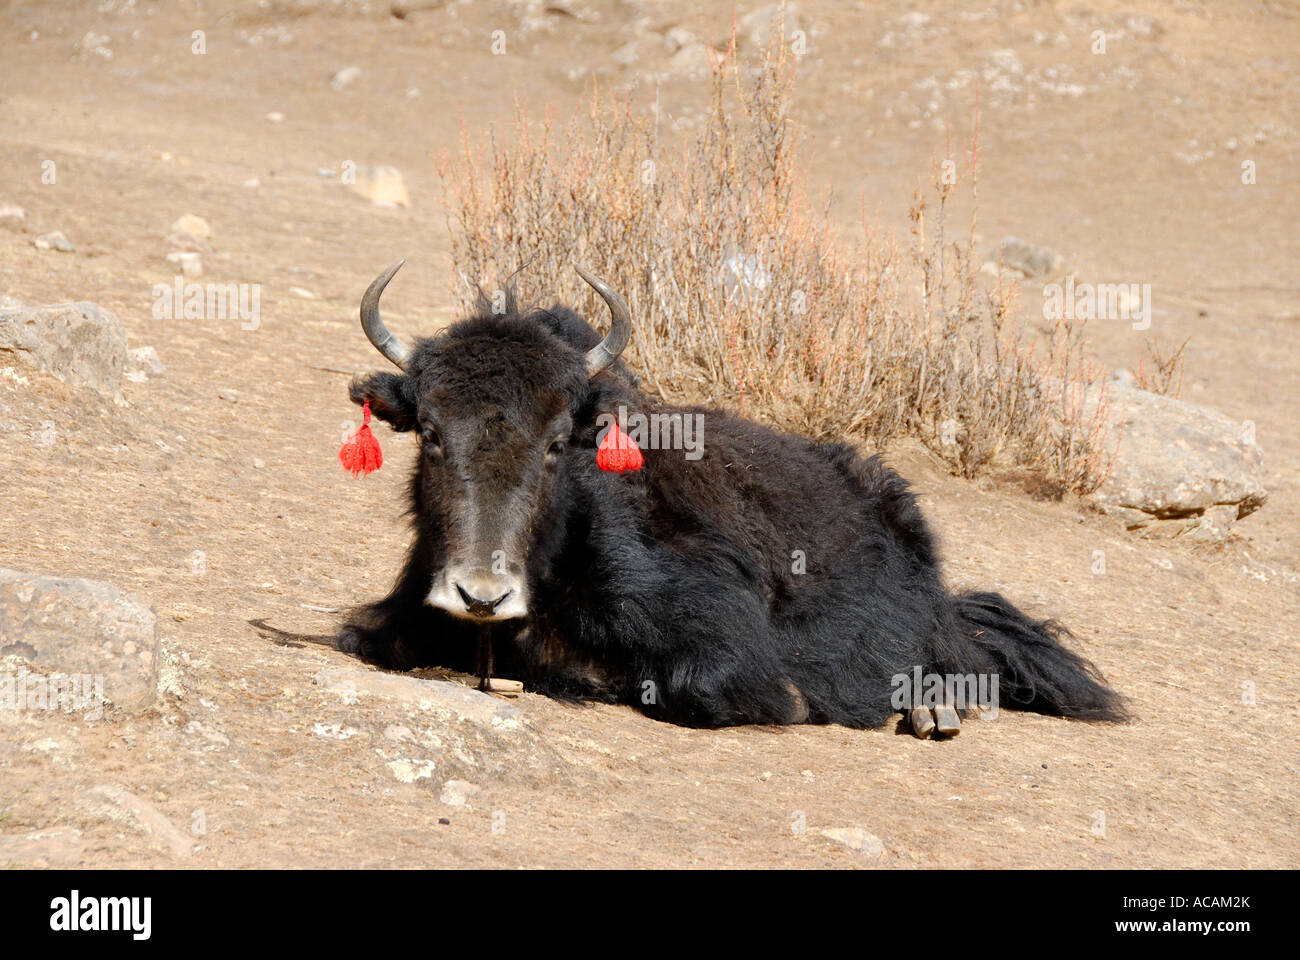 Yak with res tassels Reting monastery Tibet China Stock Photo